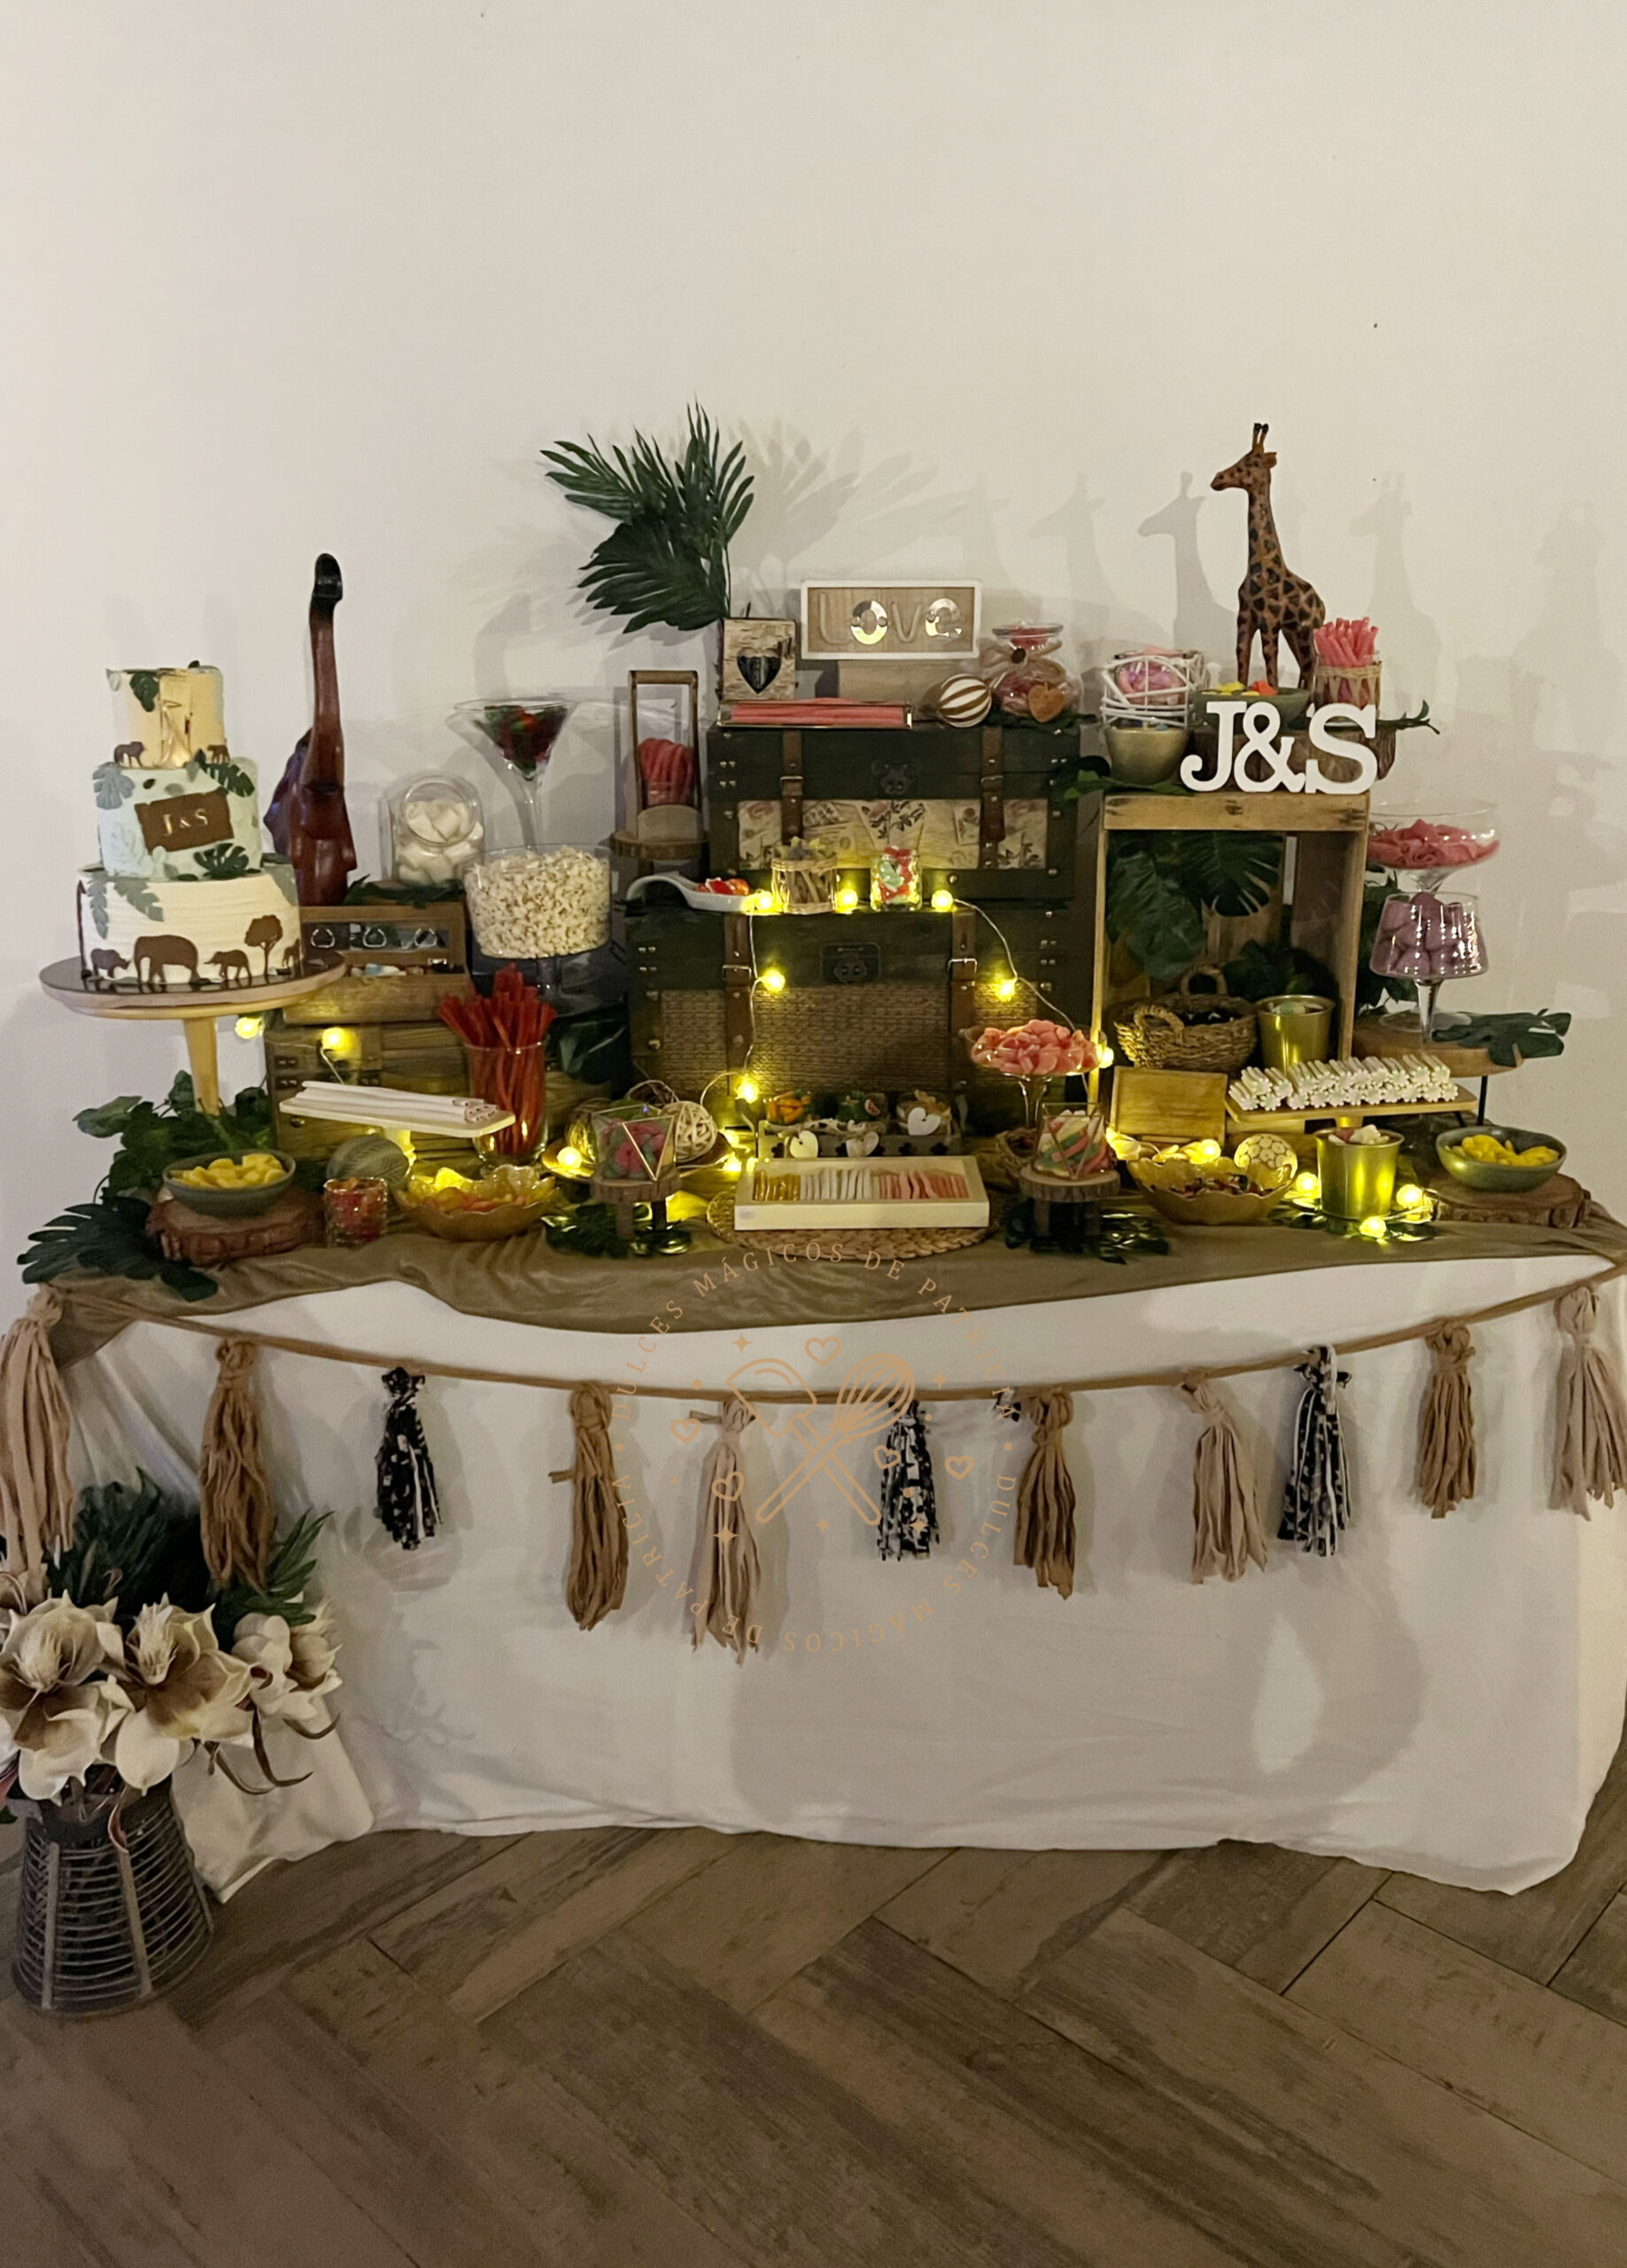 Galletas personalizadas Mesa de dulces safari, Galletas decoradas